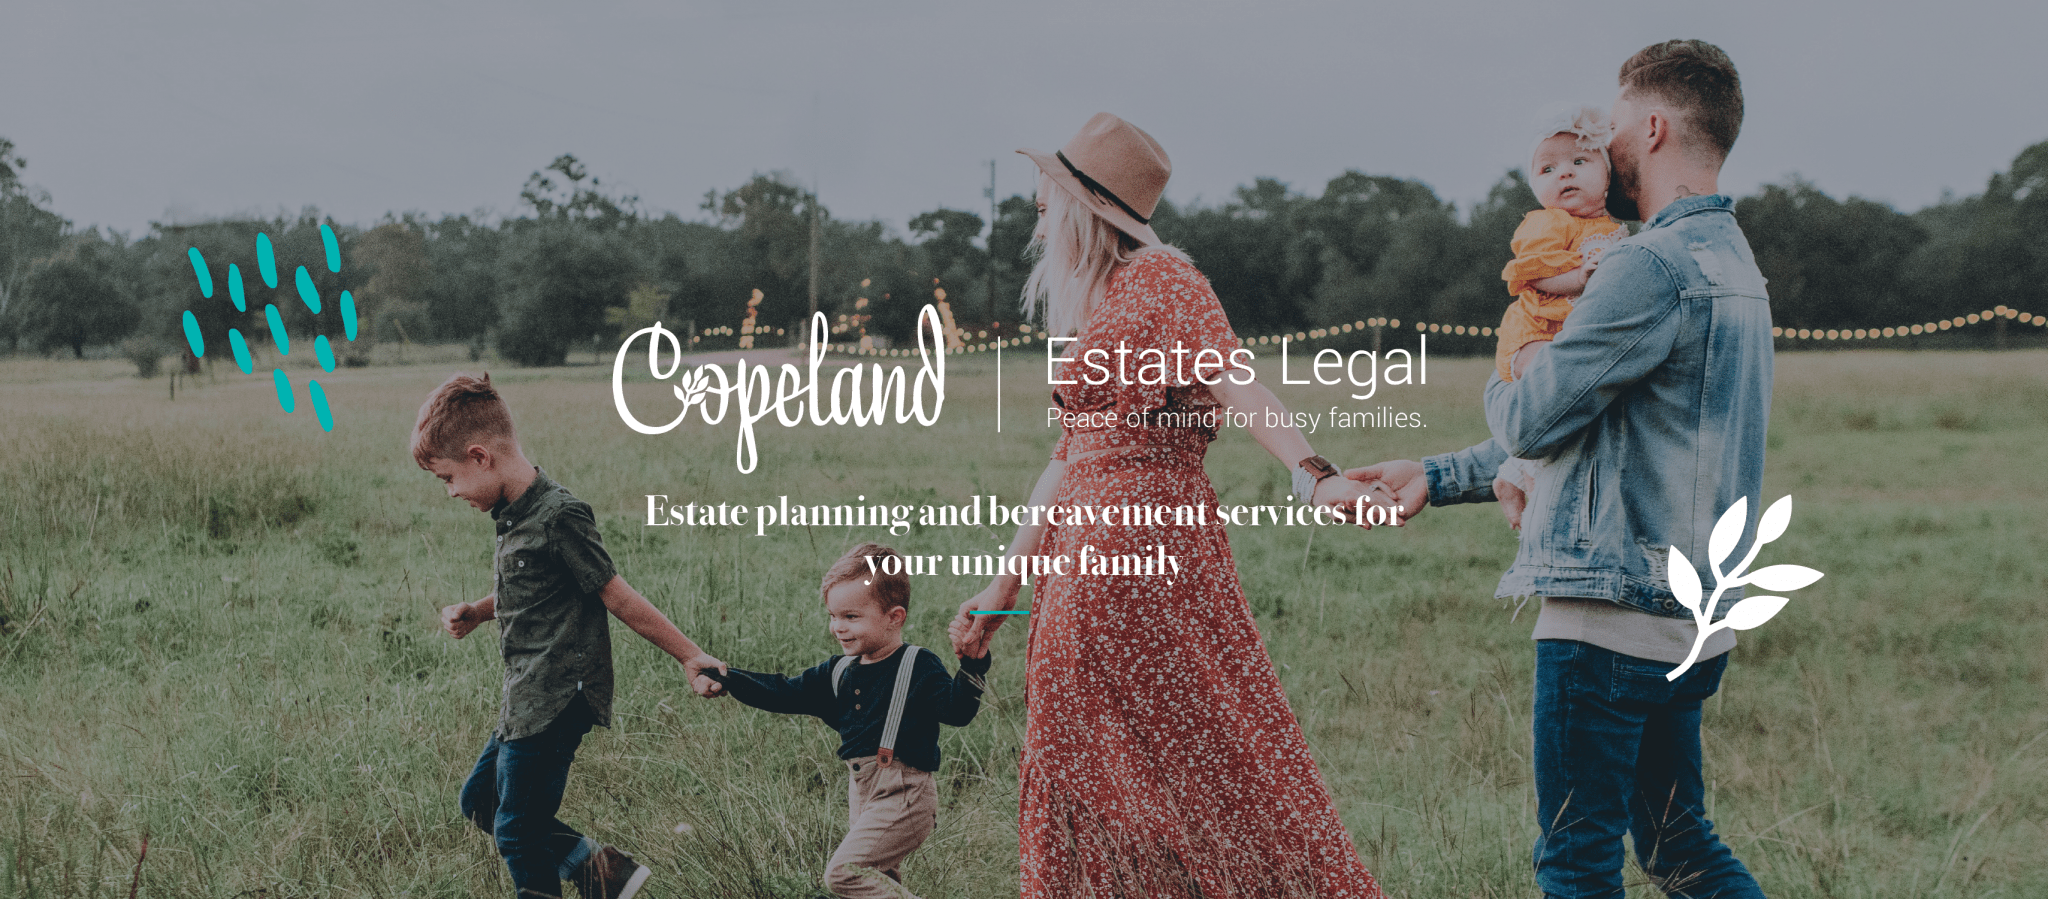 Copeland Estates Legal